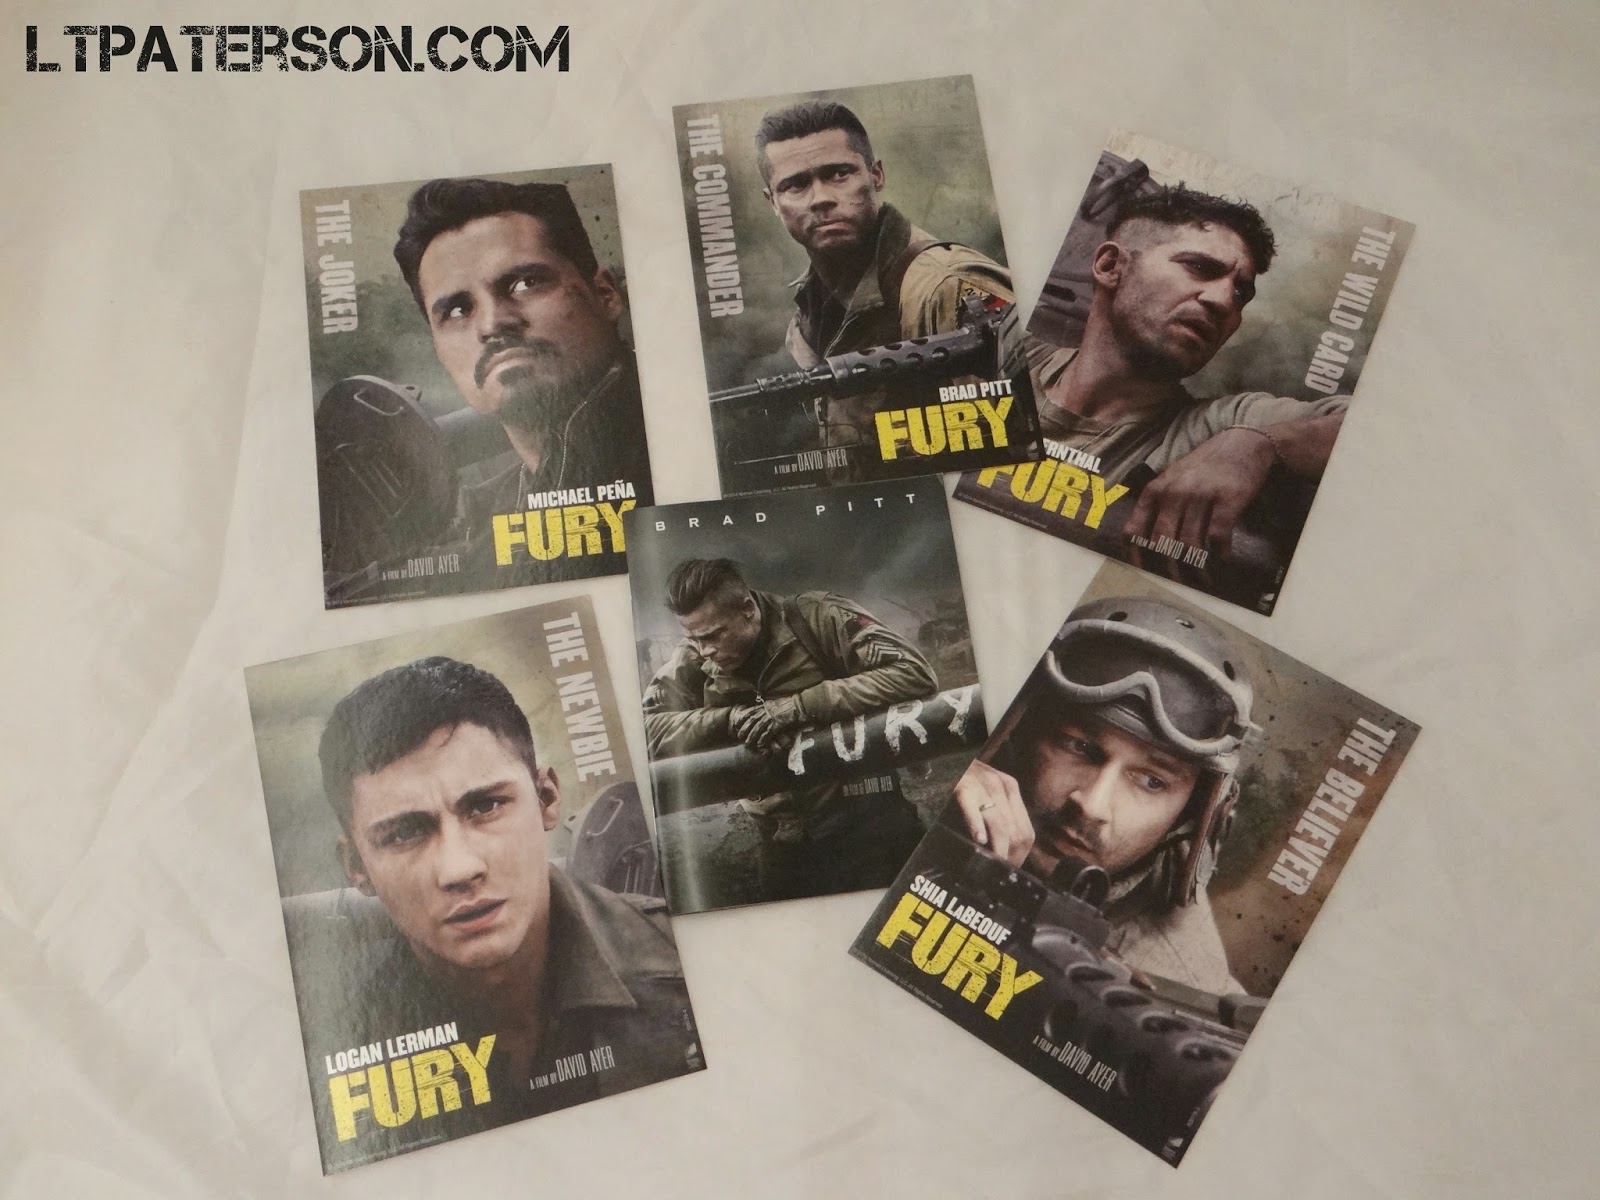 Déballage édition collector Fury spéciale Fnac | Ltpaterson.com Blog jeux video PC ...